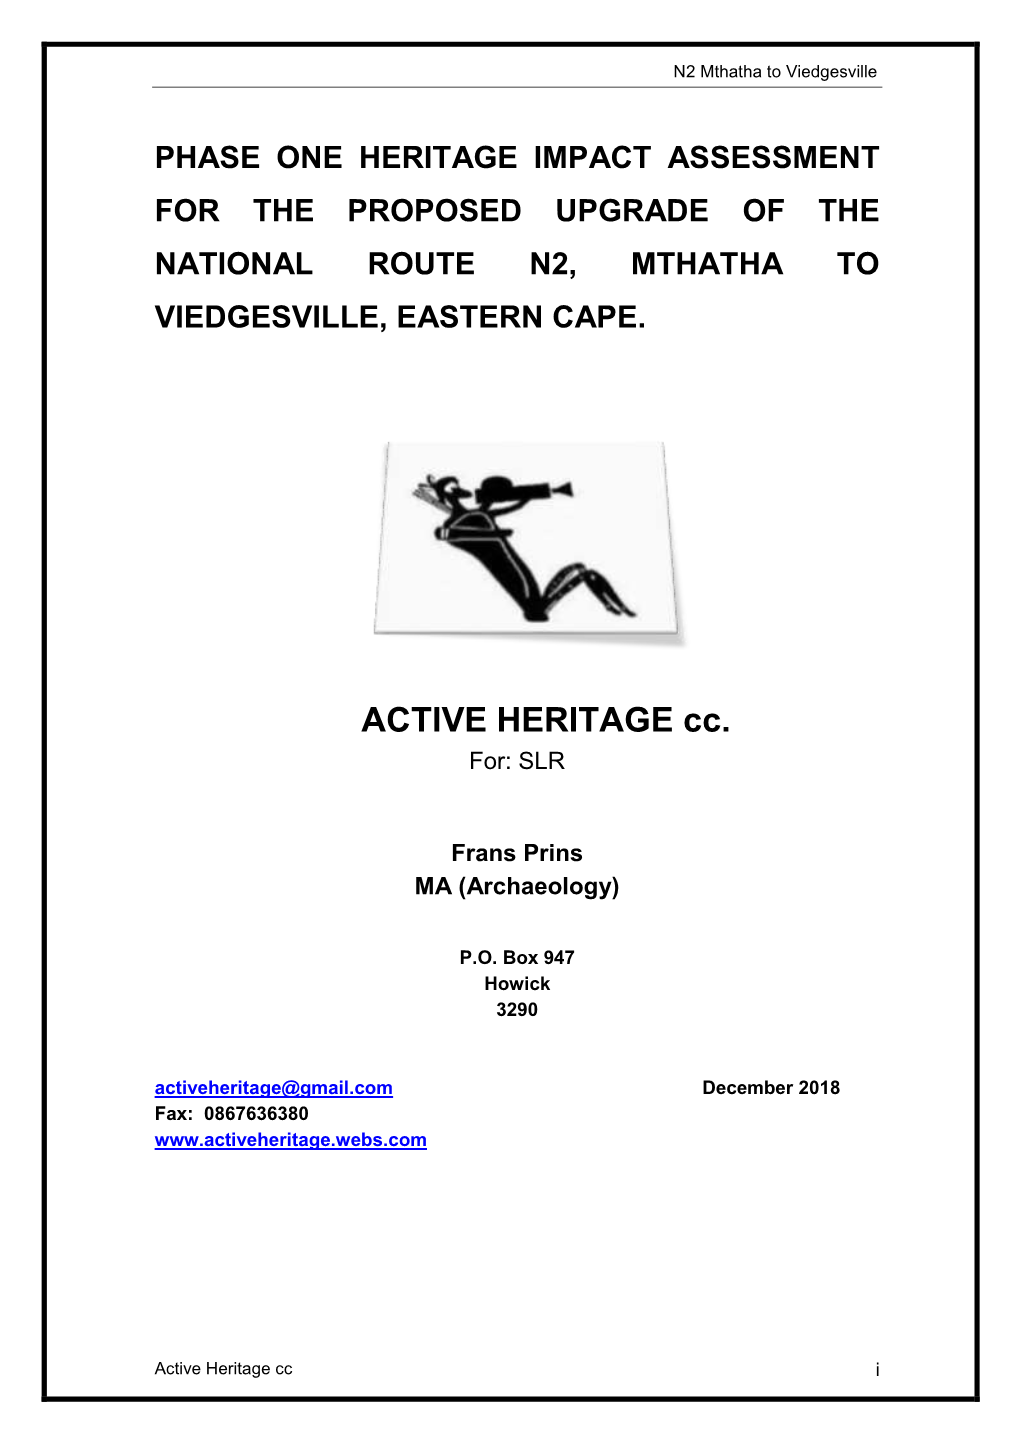 N2 Mthatha to Viedgesville HIA Dec 2018.Pdf